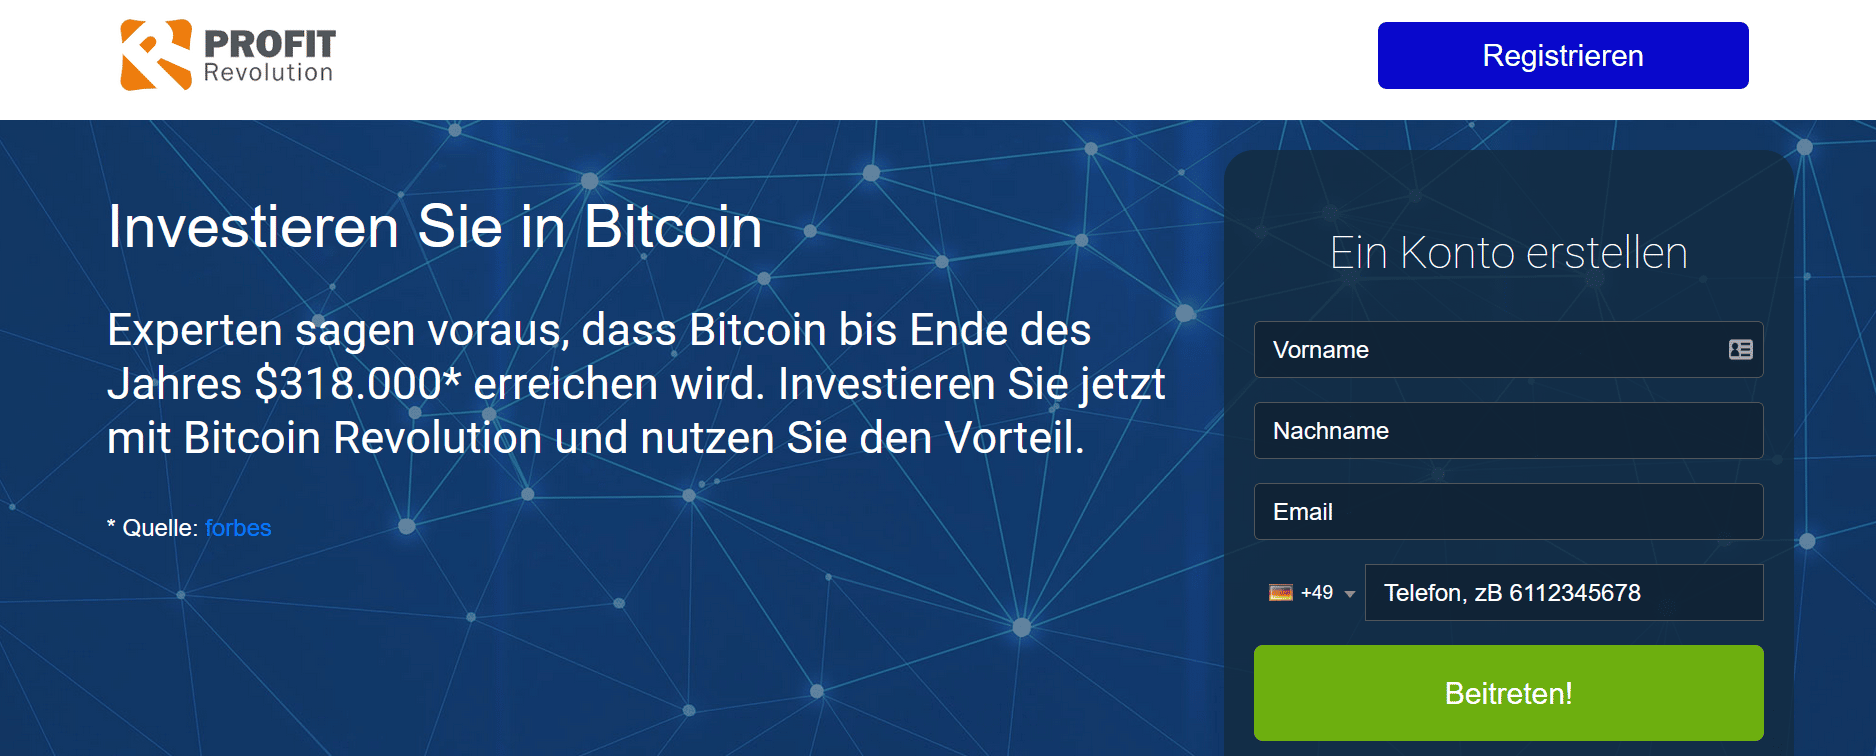 Habe 250, EURO in bitcoins investiert